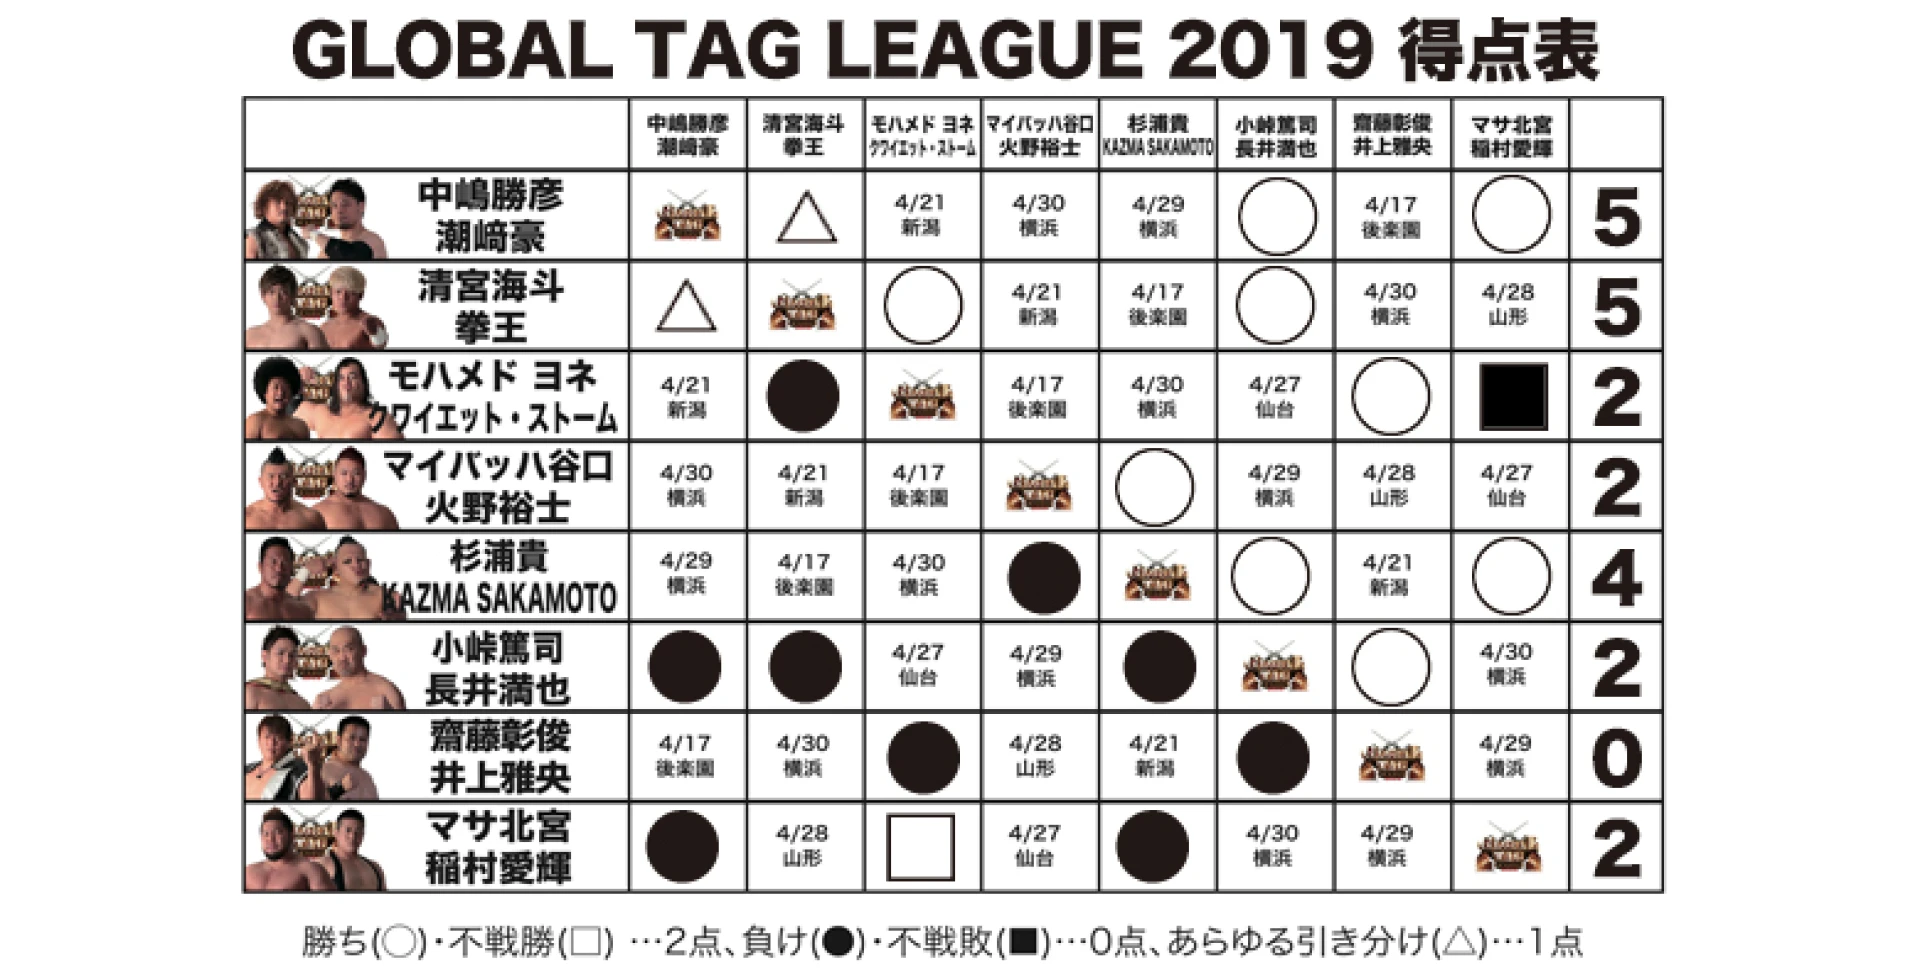 【4.14札幌大会終了時の得点状況】『GLOBAL TAG LEAGUE 2019』得点表